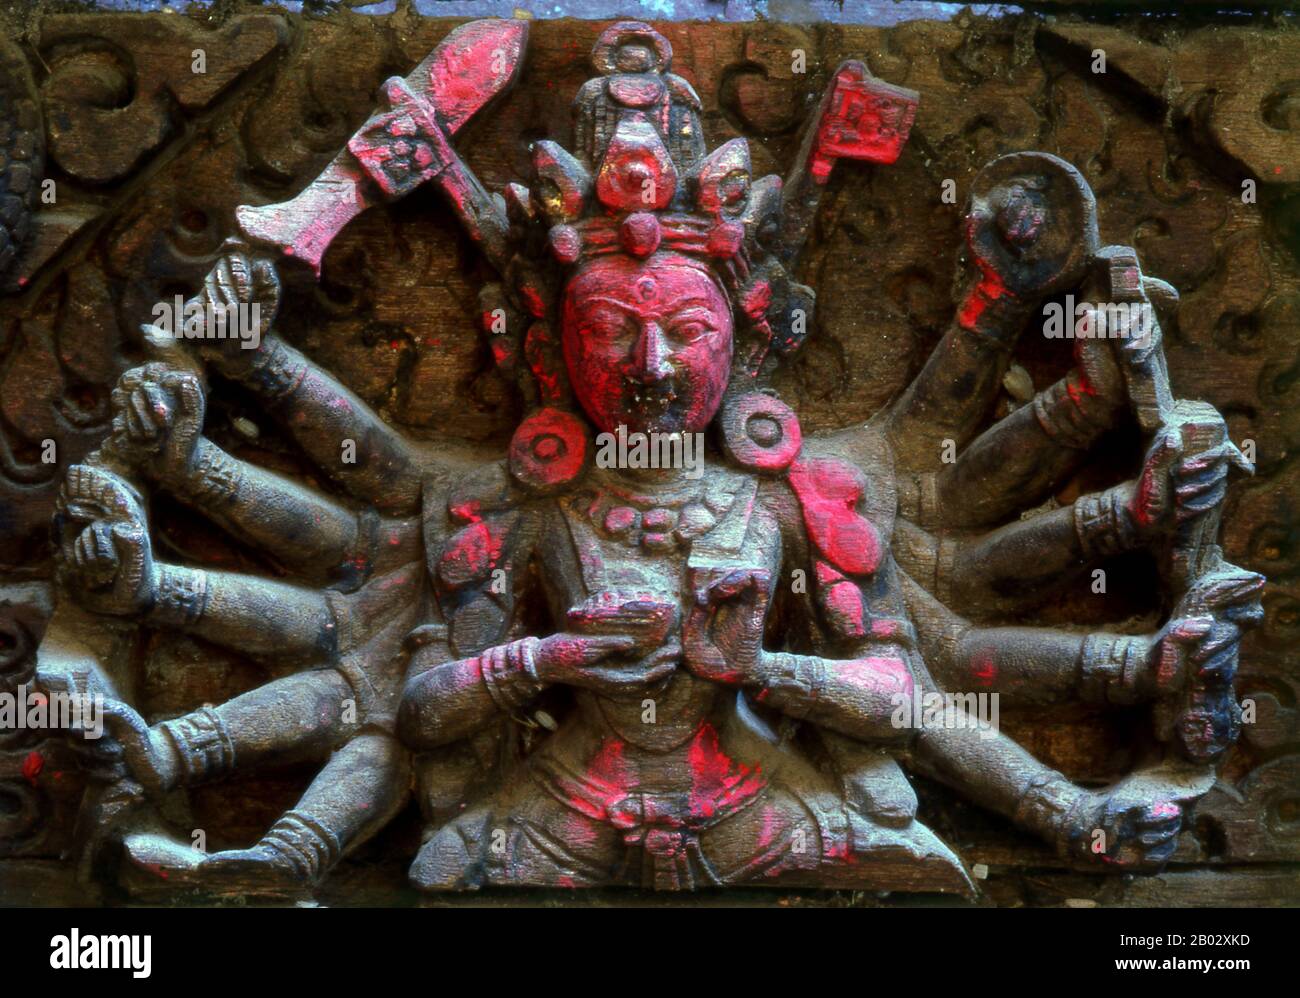 Kālī è la dea indù associata all'energia eterna. "Chi distrugge". Il nome Kali deriva da kāla, che significa nero, tempo, morte, signore della morte, Shiva. Kali significa "il nero". Poiché Shiva è chiamata Kāla - il tempo eterno, Kālī, la sua consorte, significa anche 'Tempo' o 'morte' (come nel tempo è venuto). Quindi, Kali è considerata la dea del tempo e del cambiamento. Anche se talvolta presentato come oscuro e violento, la sua prima incarnazione come figura di annientamento ha ancora qualche influenza. Varie cosmologie Hindu Shakta, così come credenze tantriche Shakta, la adorano come il massimo realit Foto Stock